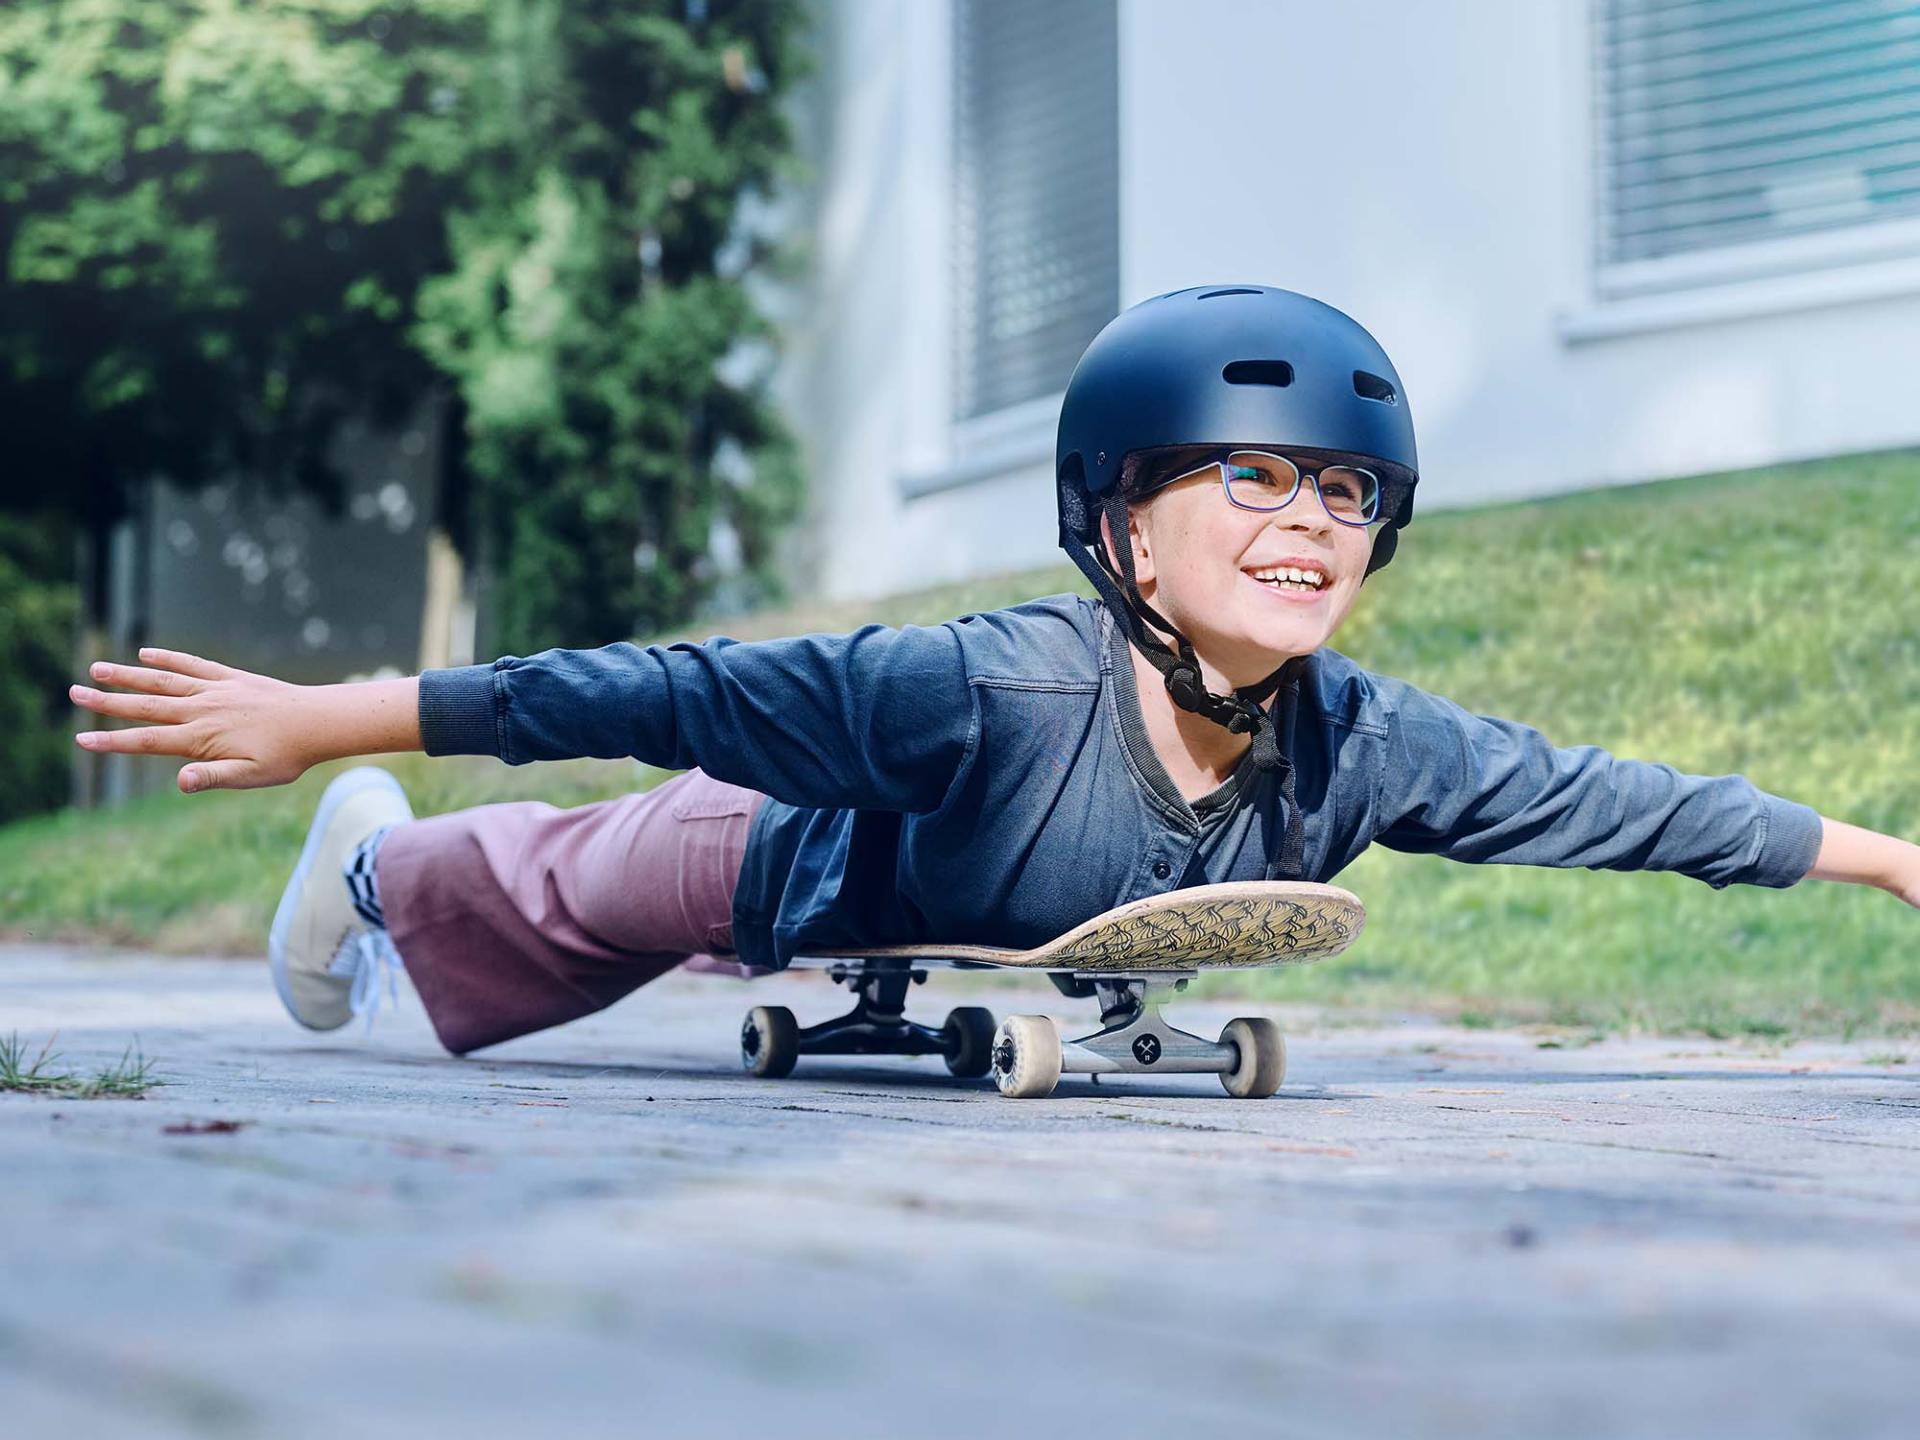 En jente med hjelm og briller ruller liggende på et skateboard nedover veien og strekker armene ut.